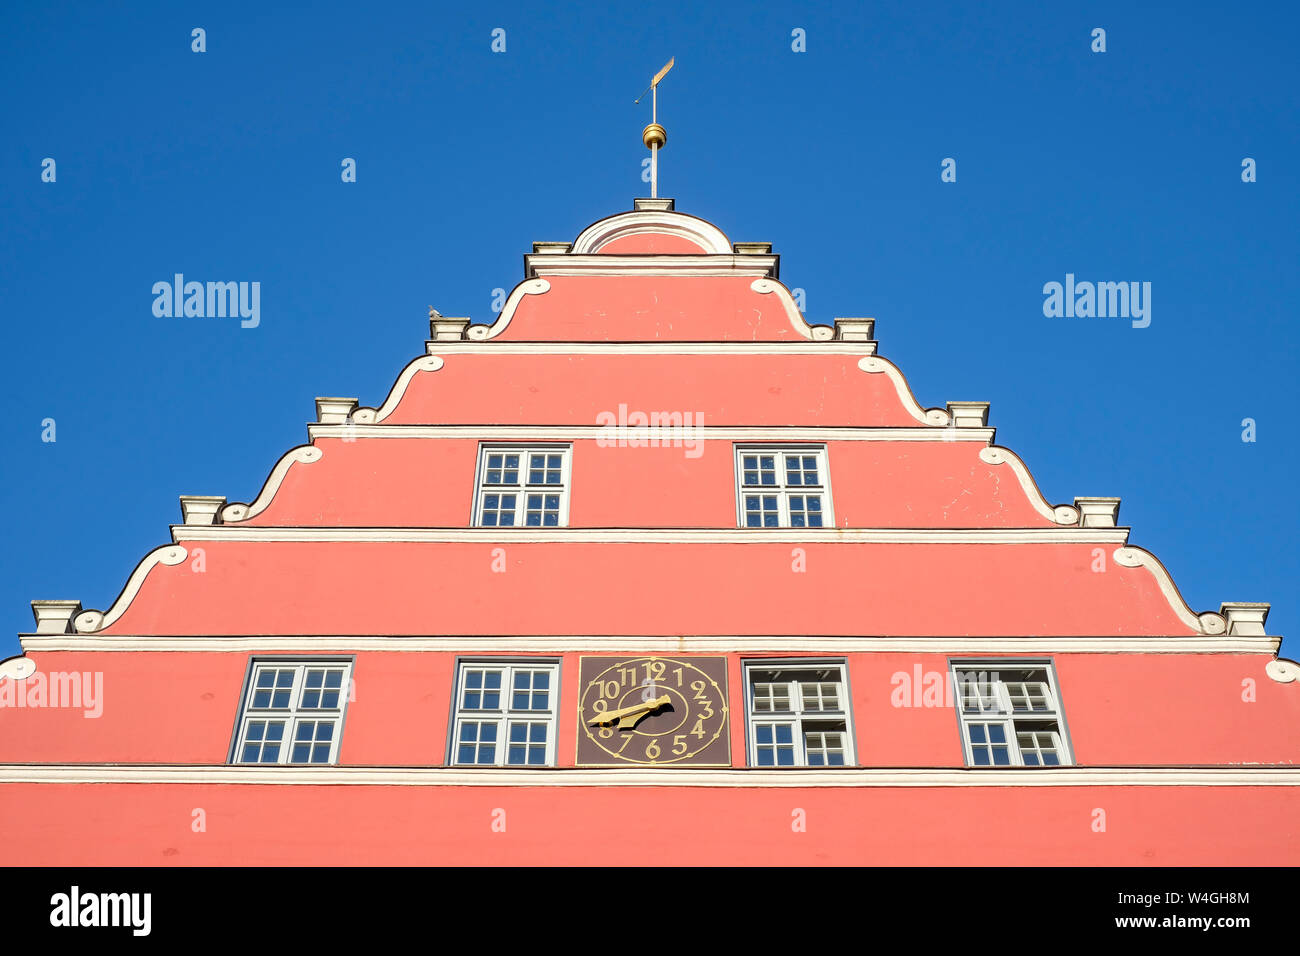 Germany, Mecklenburg-Western Pomerania, Greifswald, town hall Stock Photo